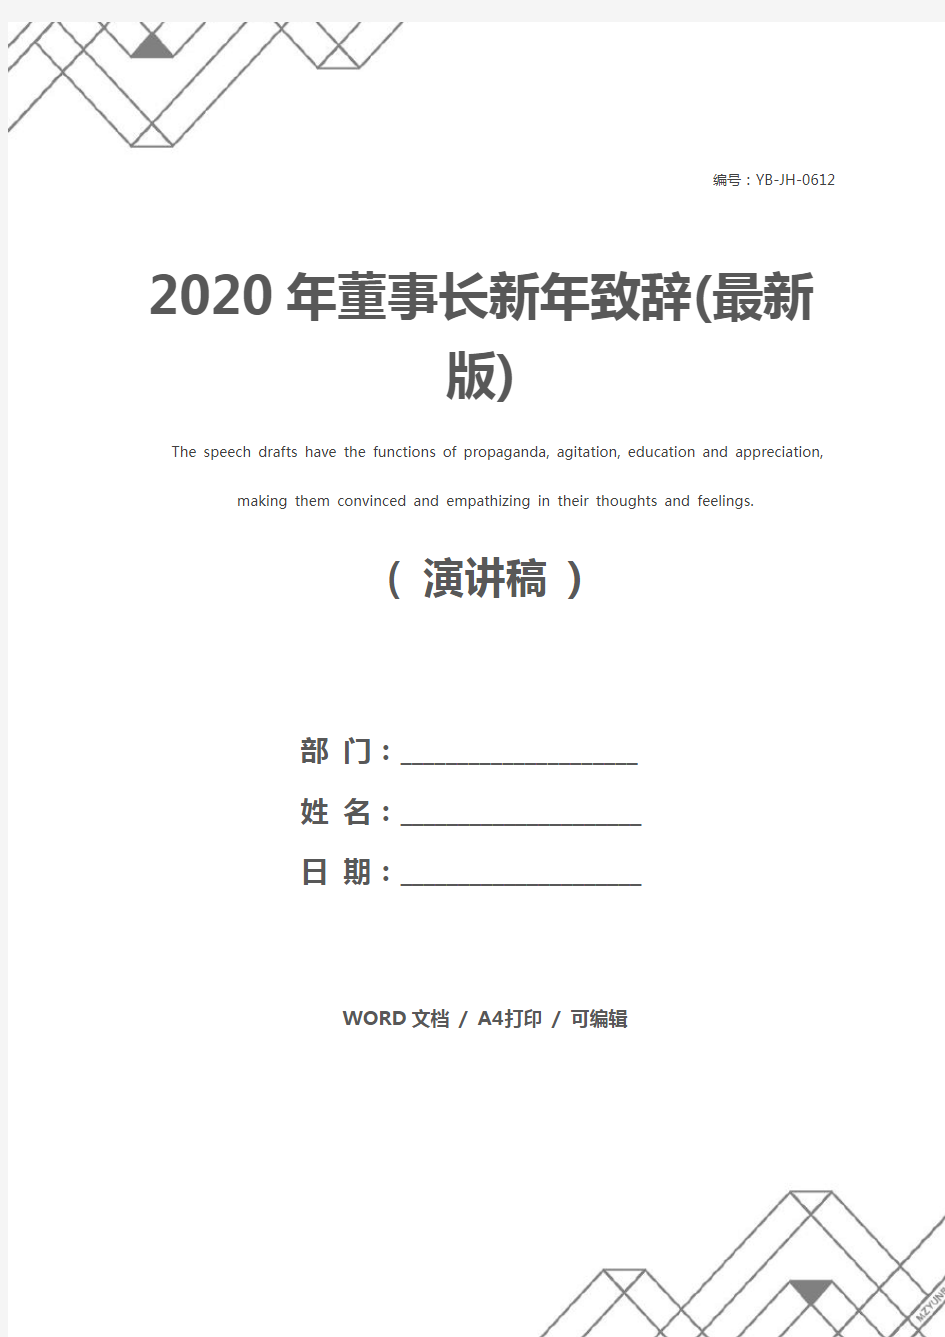 2020年董事长新年致辞(最新版)